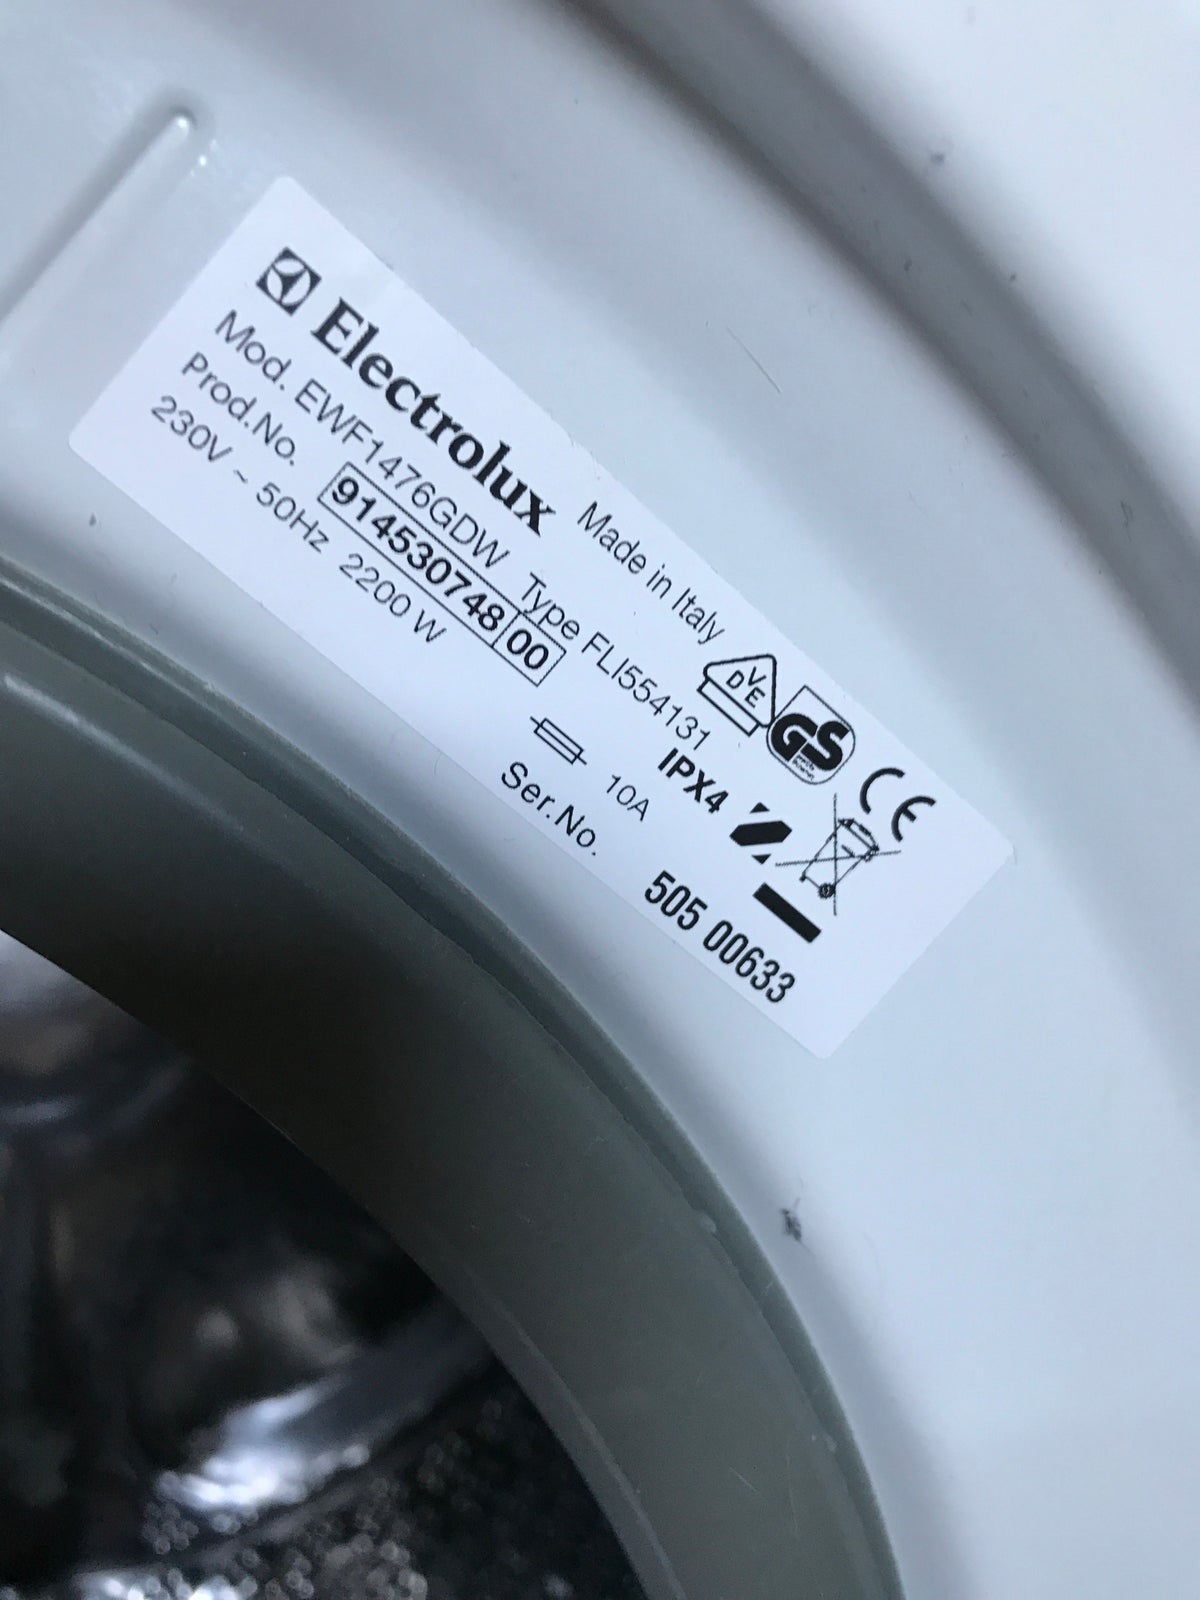 Electrolux vaskemaskine, EWF 1476 GDW, frontbetjent